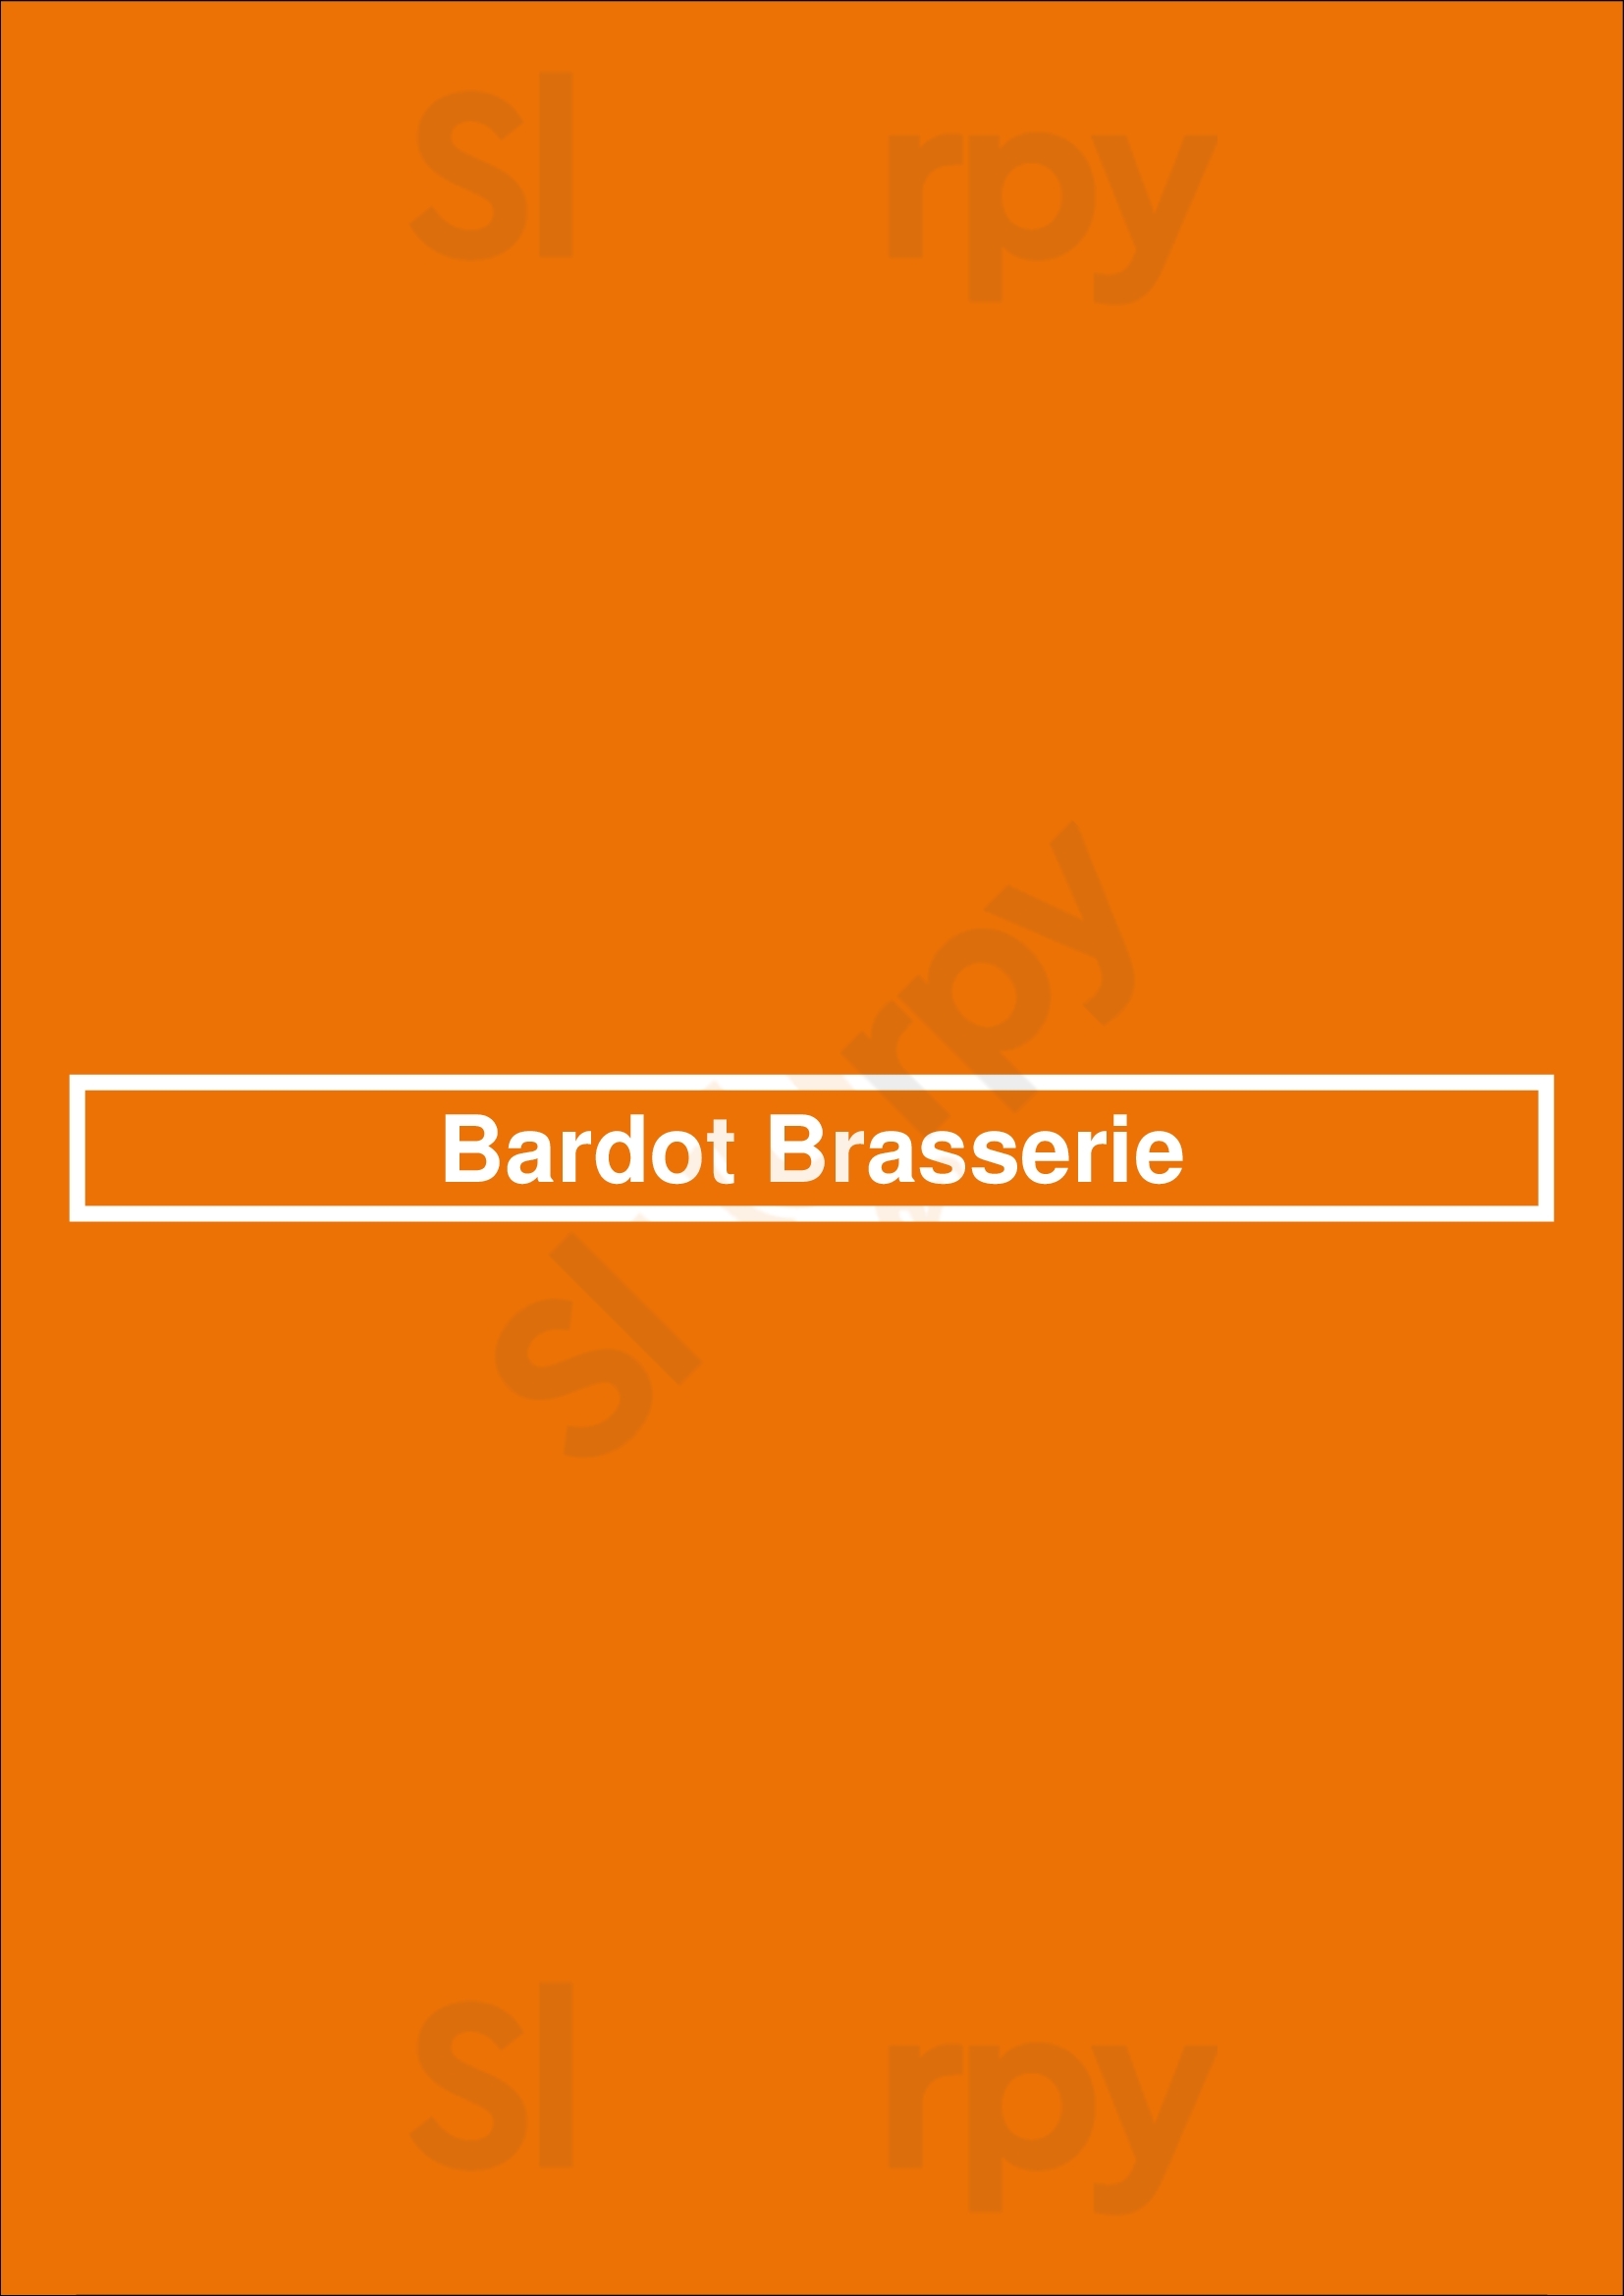 Bardot Brasserie Las Vegas Las Vegas Menu - 1